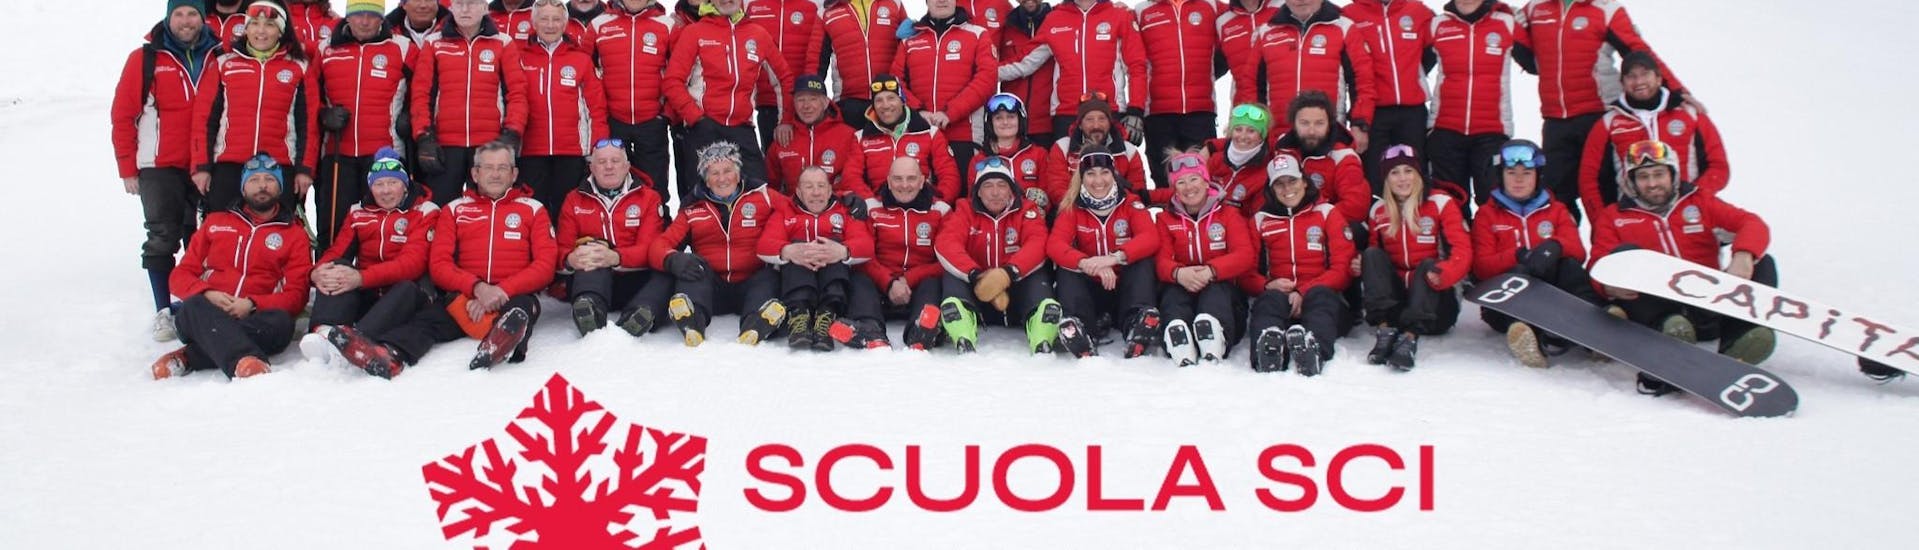 The ski and snowboard instructors from Scuola Sci Piani di Bobbio.